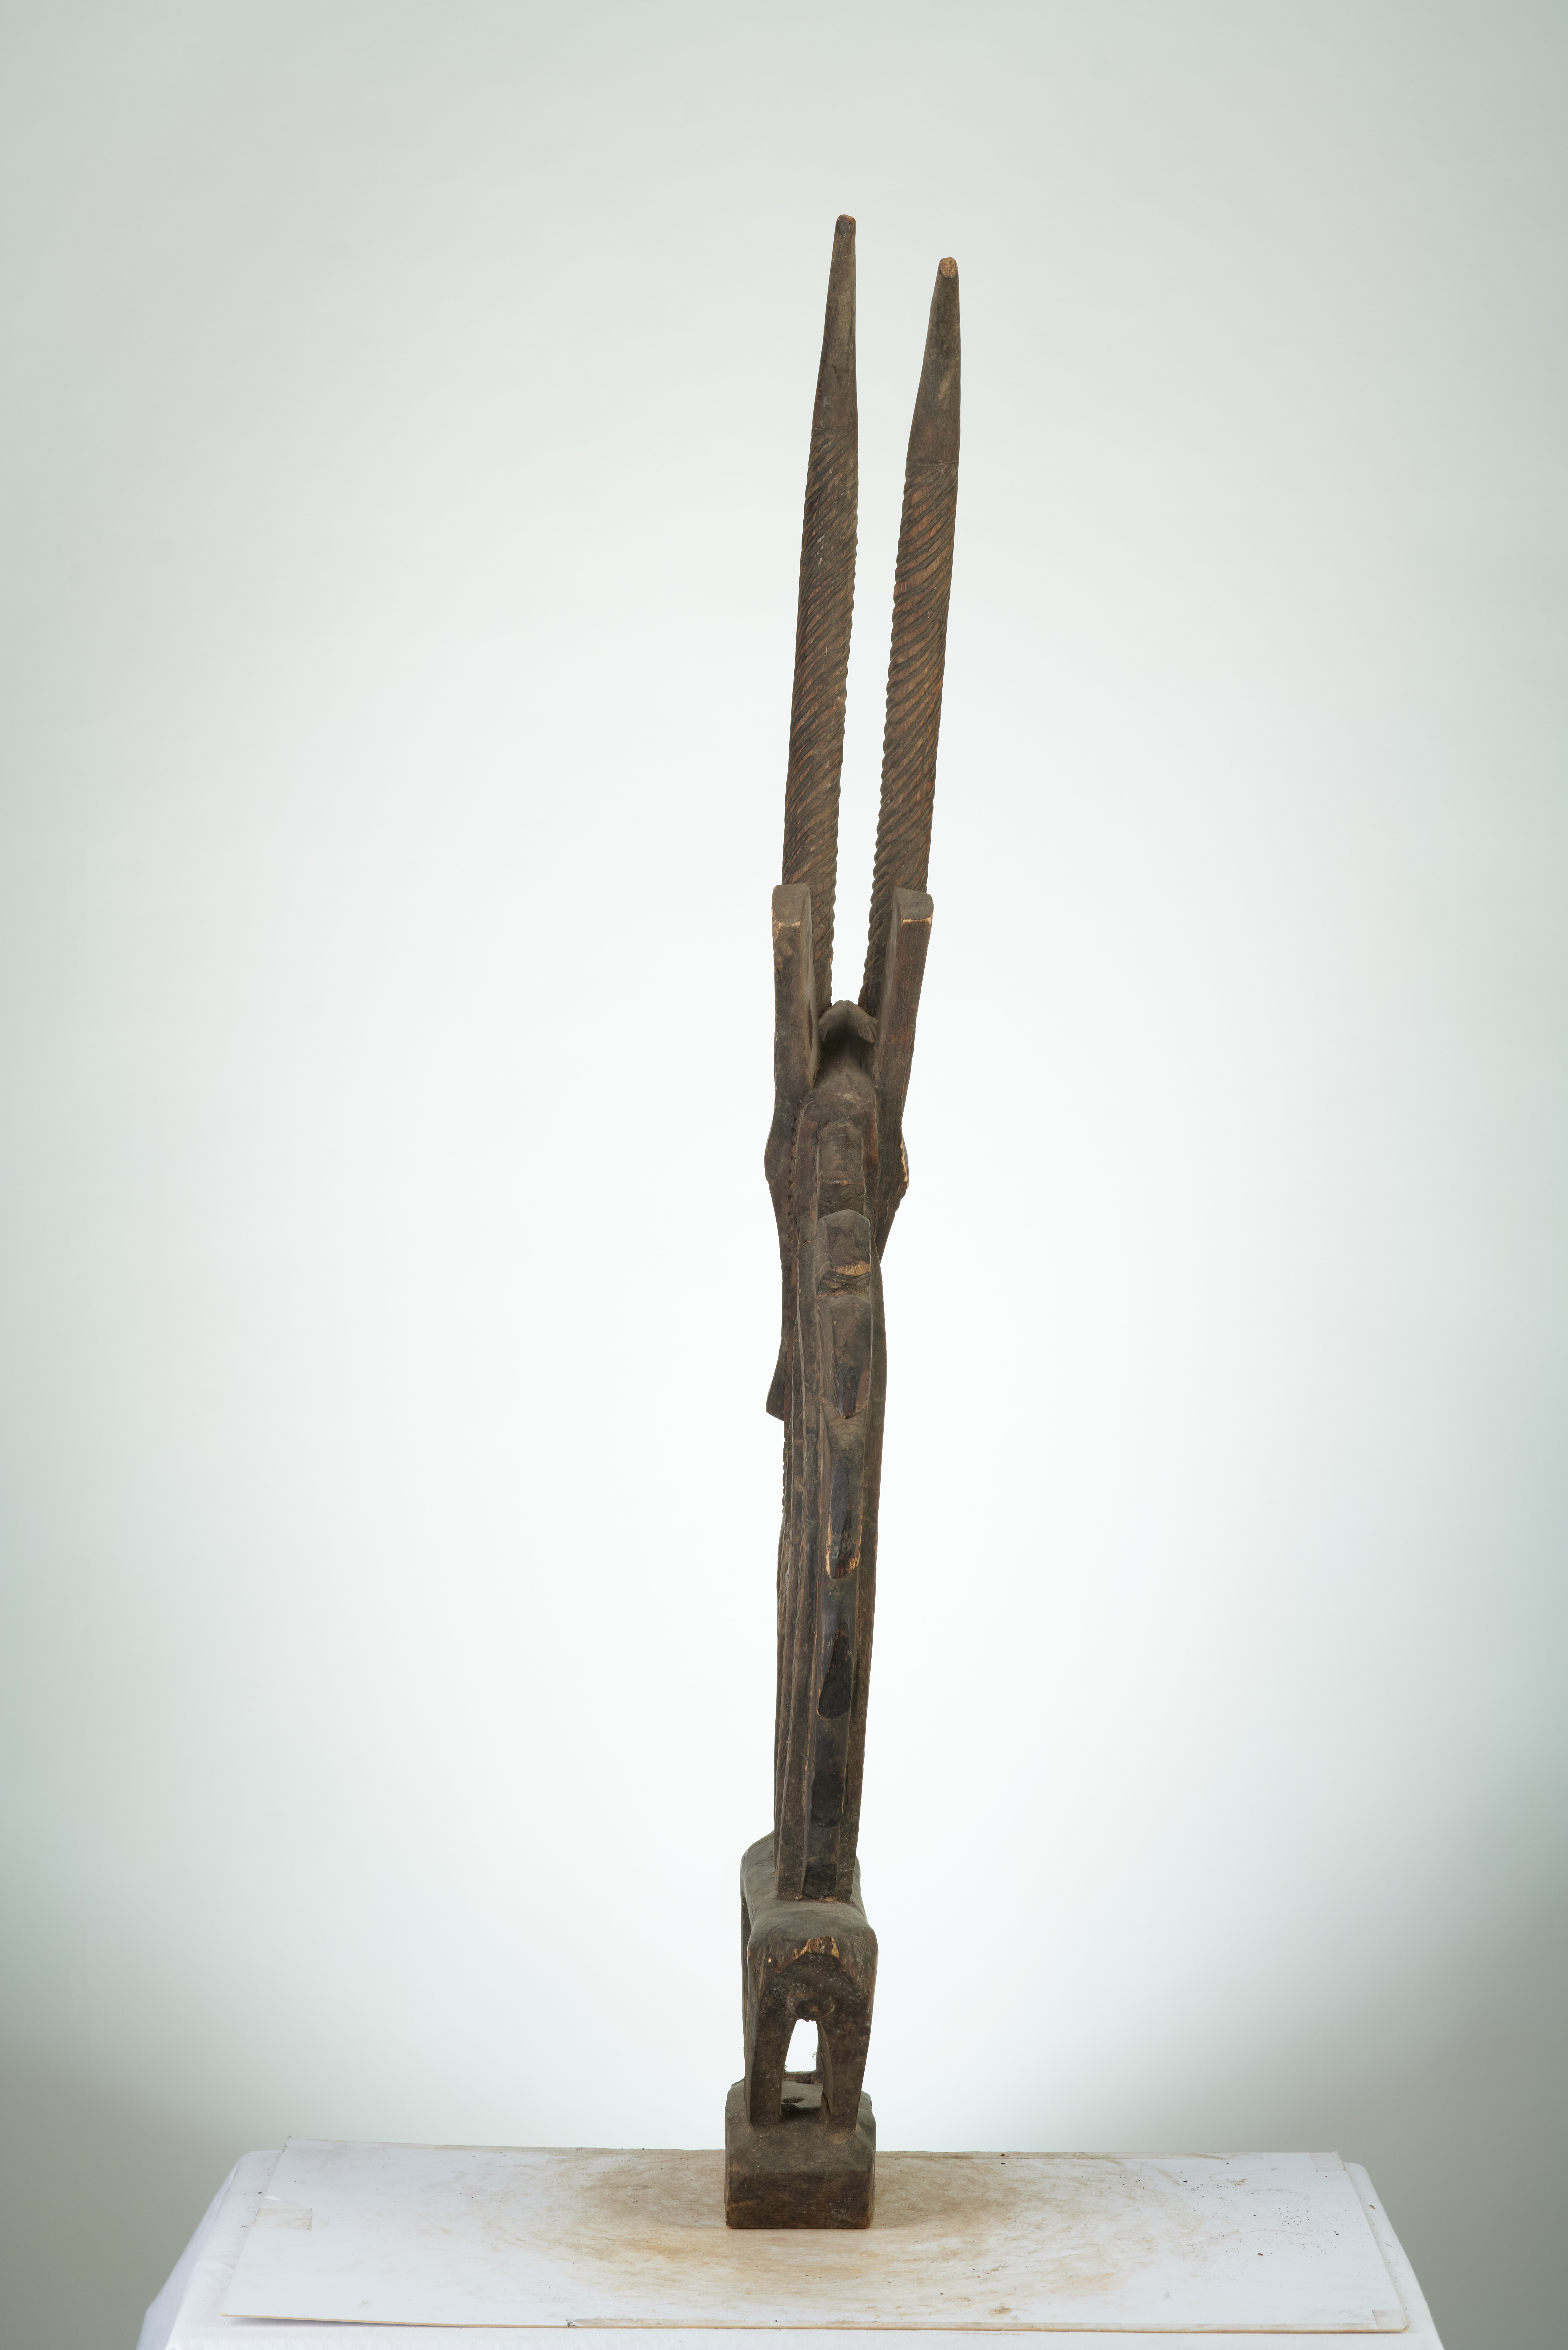 Bambara (tchiawara), d`afrique : Mali, statuette Bambara (tchiawara), masque ancien africain Bambara (tchiawara), art du Mali - Art Africain, collection privées Belgique. Statue africaine de la tribu des Bambara (tchiawara), provenant du Mali, 1664:Cimier tji-wara portés lors des cérémonies agricolesIls sont portés dans les champs au moment des semailles,dans l